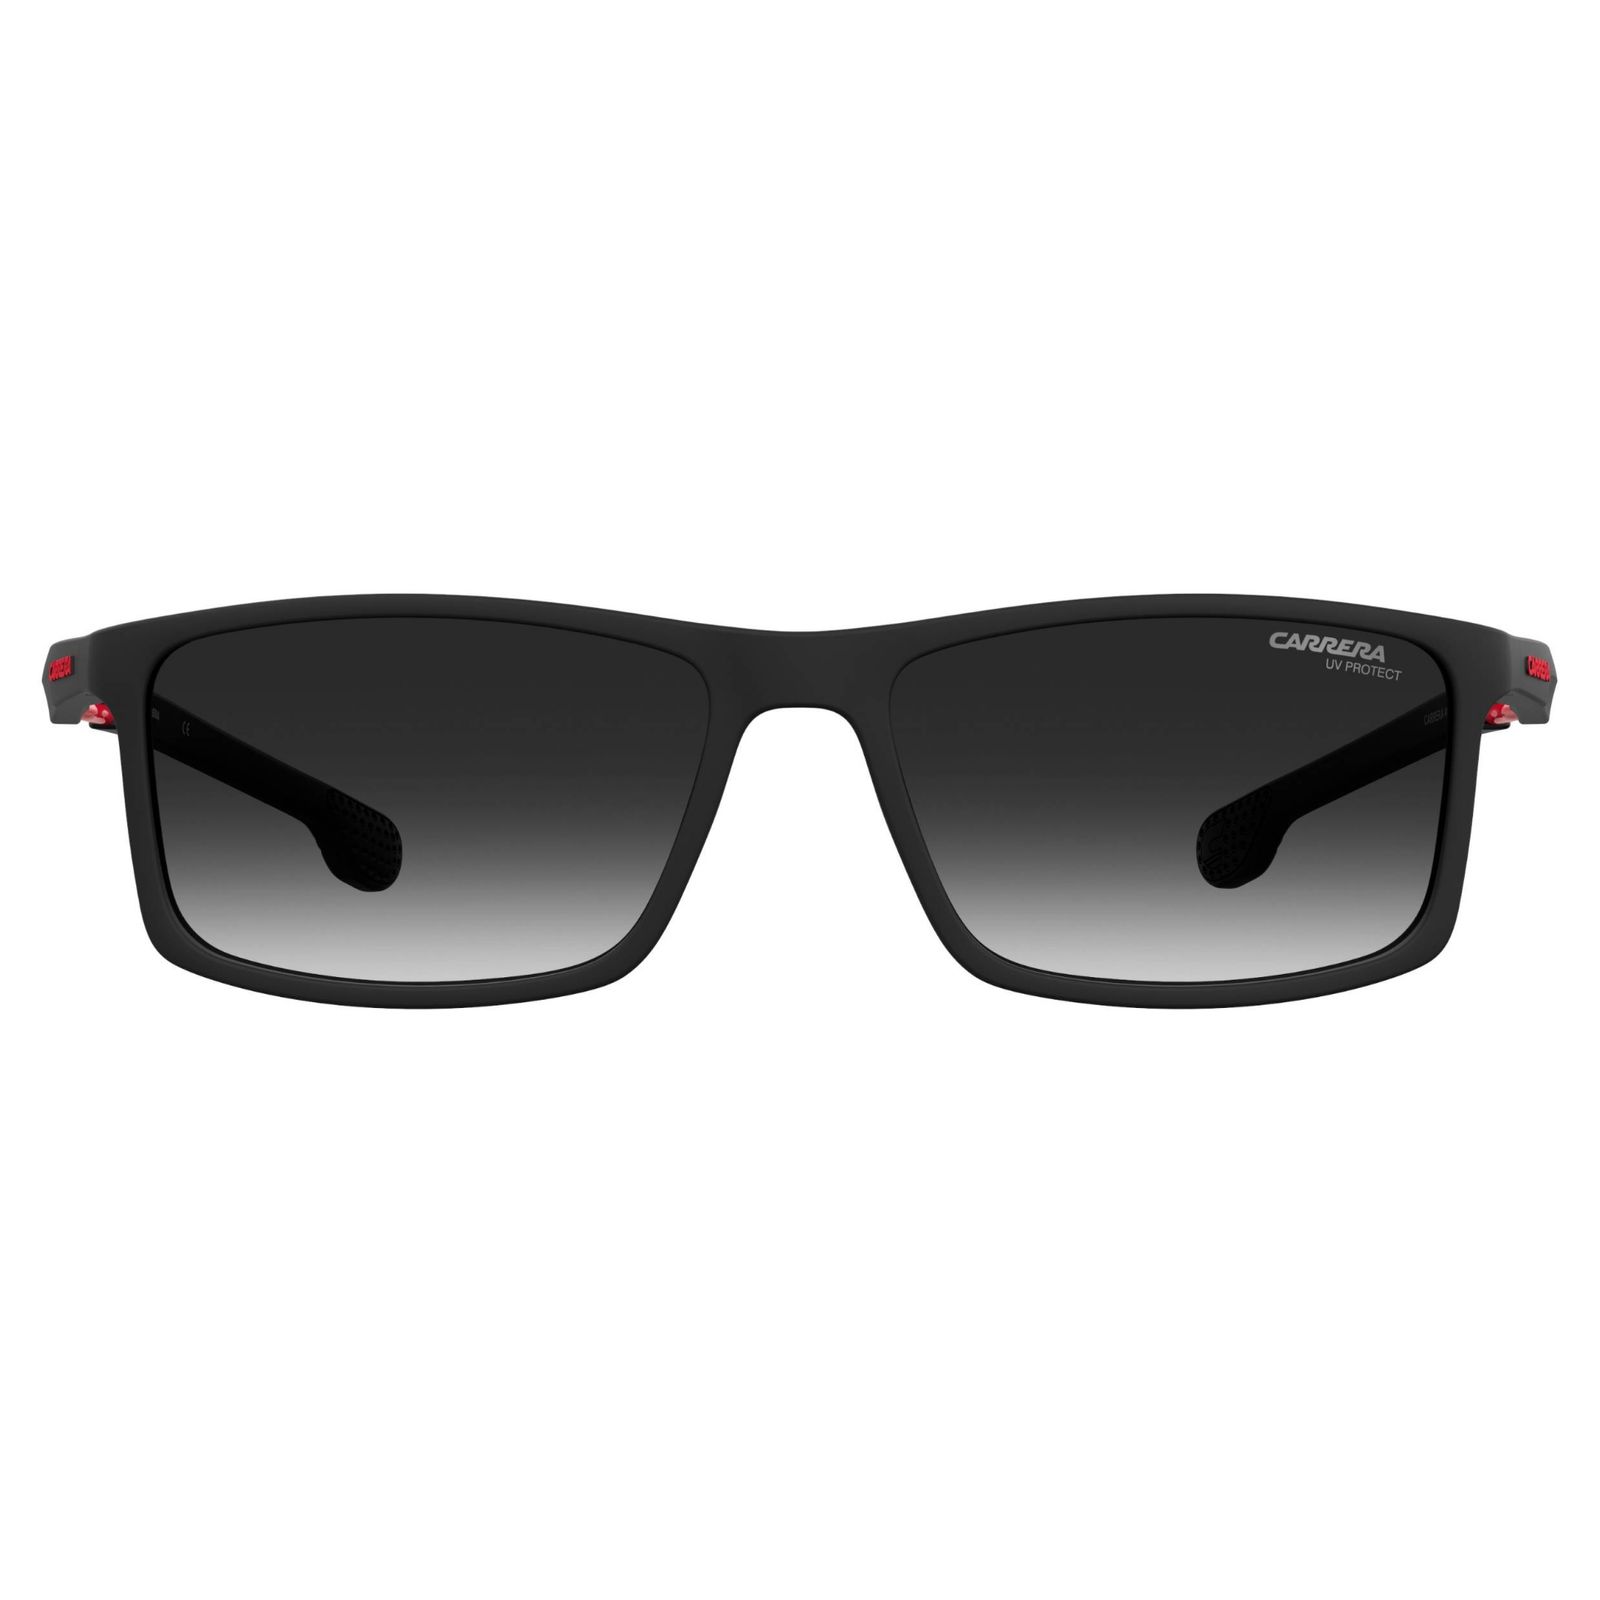 عینک آفتابی کاررا مدل WEJ-08 4016-s -  - 4